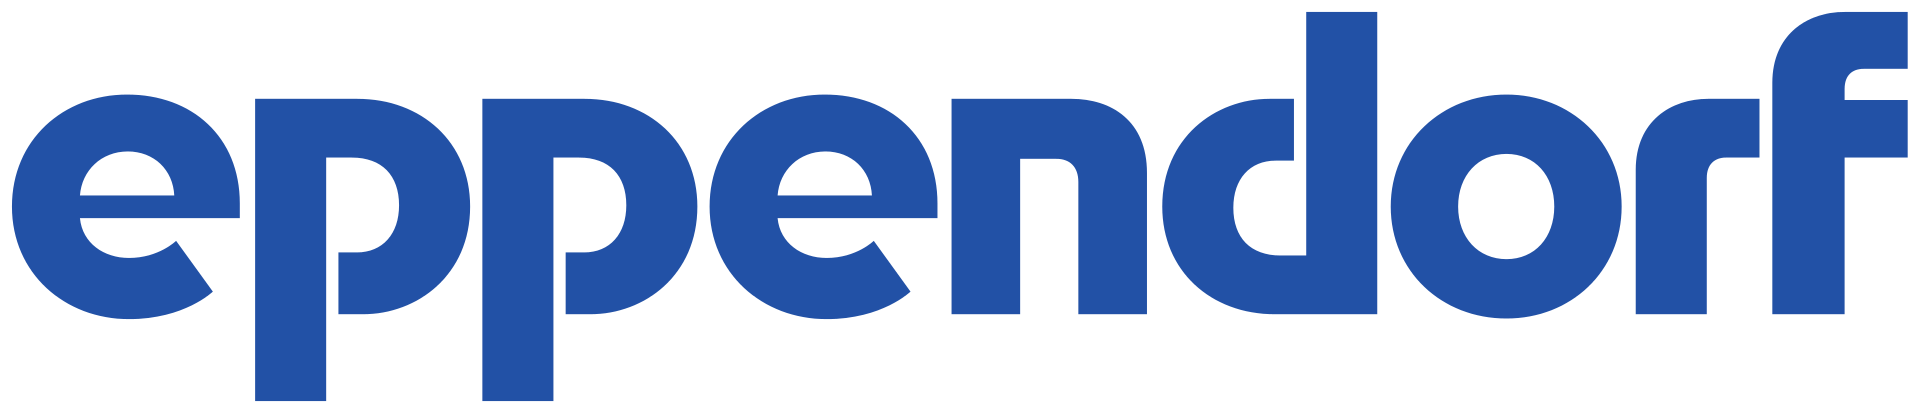 Eppendorf-Logo.svg.png